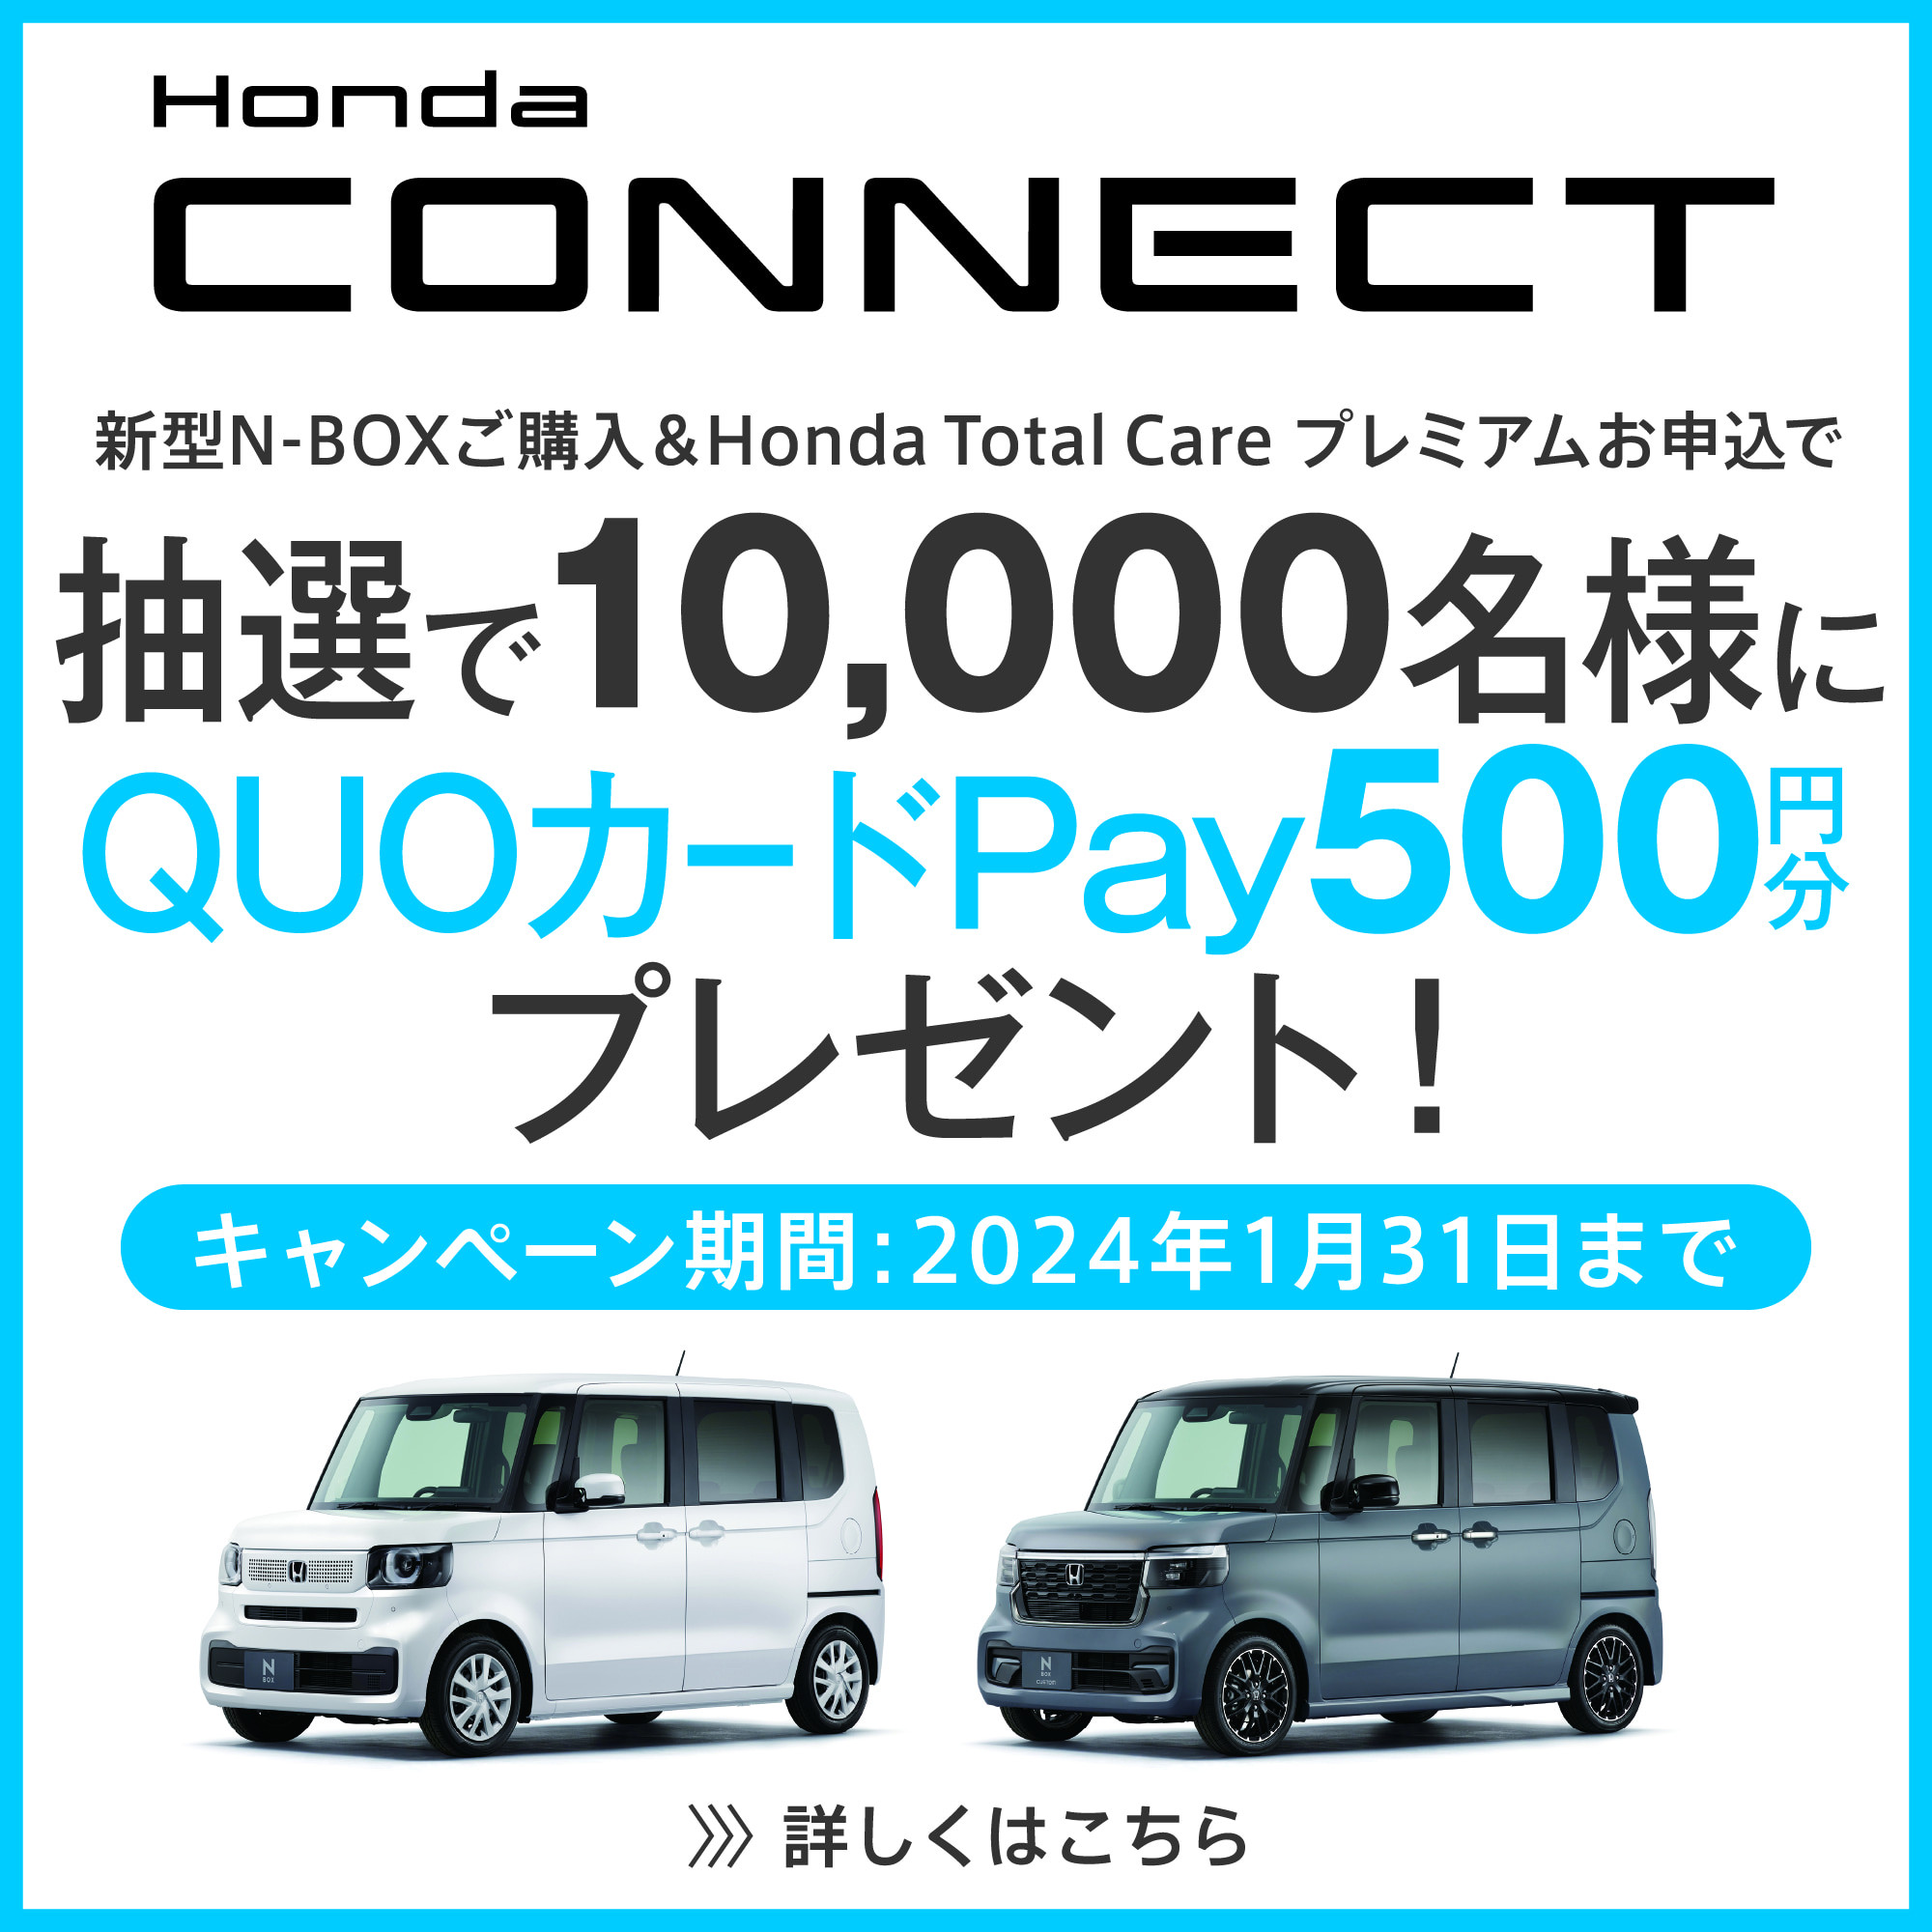 Honda CONNECT 新型N-BOXご購入＆Honda Total Care プレミアムお申込で抽選で10,000名様にQUOカードPay500円分プレゼント!